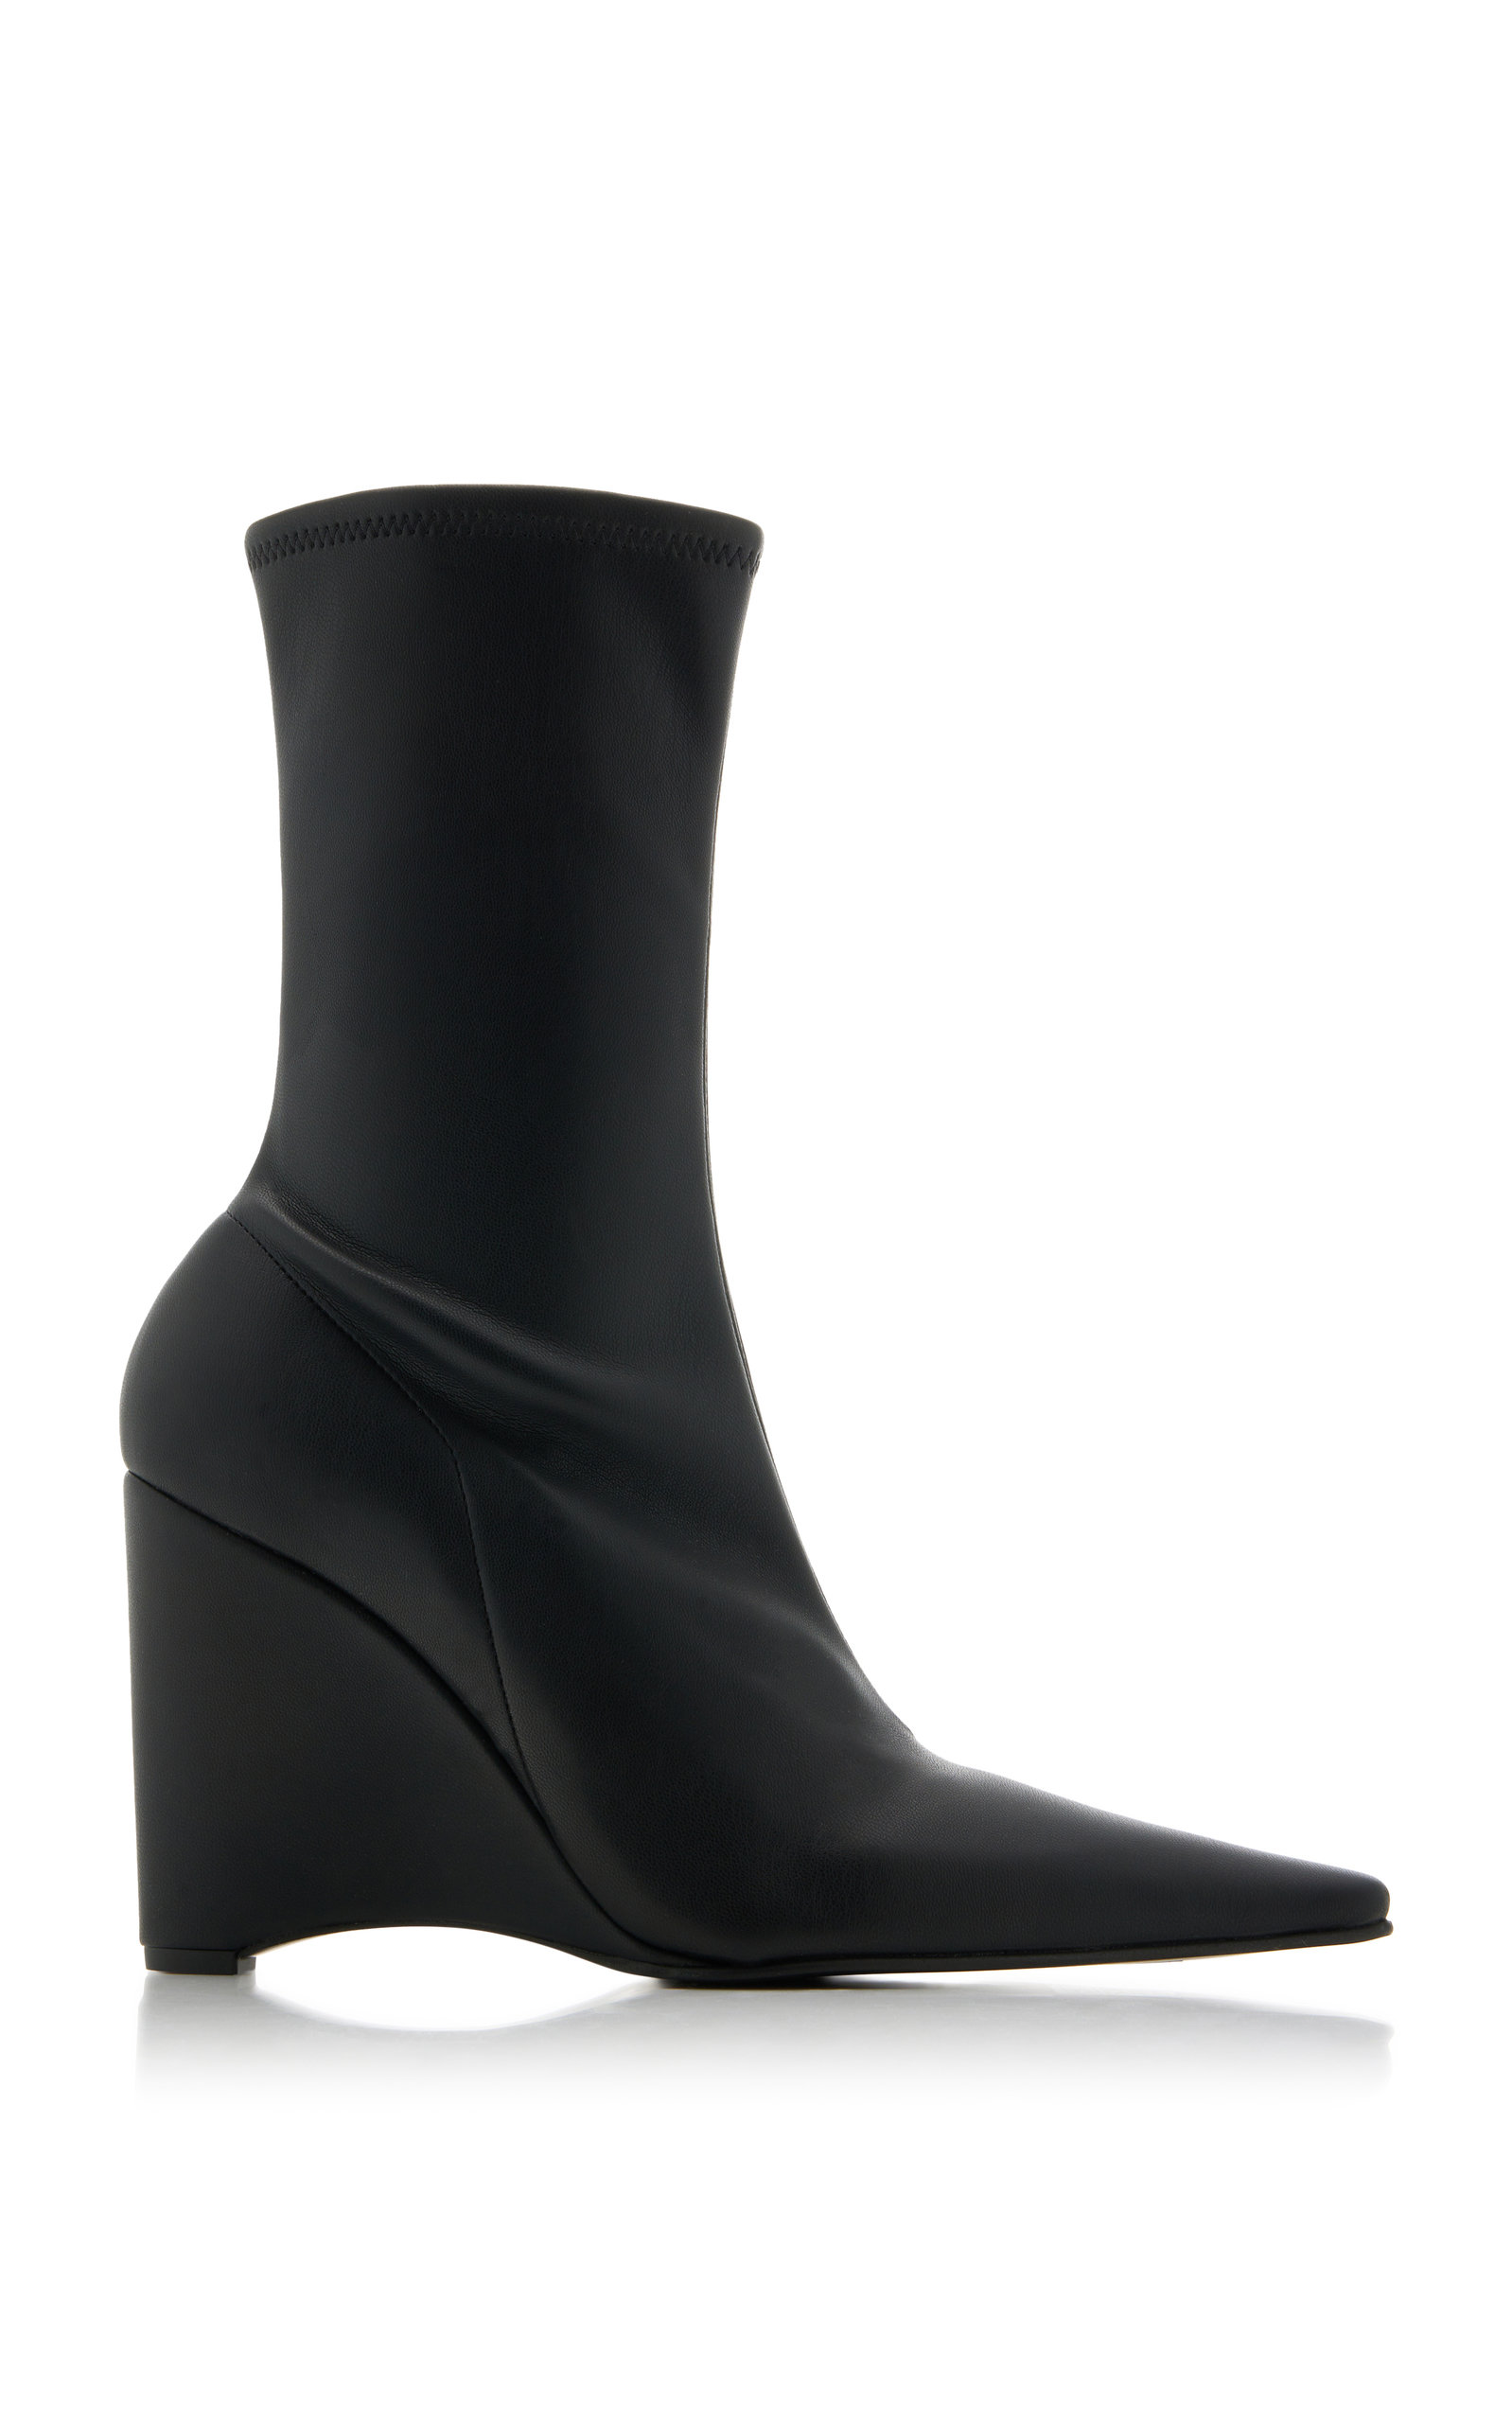 JW Anderson - Women's Leather Wedge Ankle Boots - Black - IT 36 - Moda Operandi